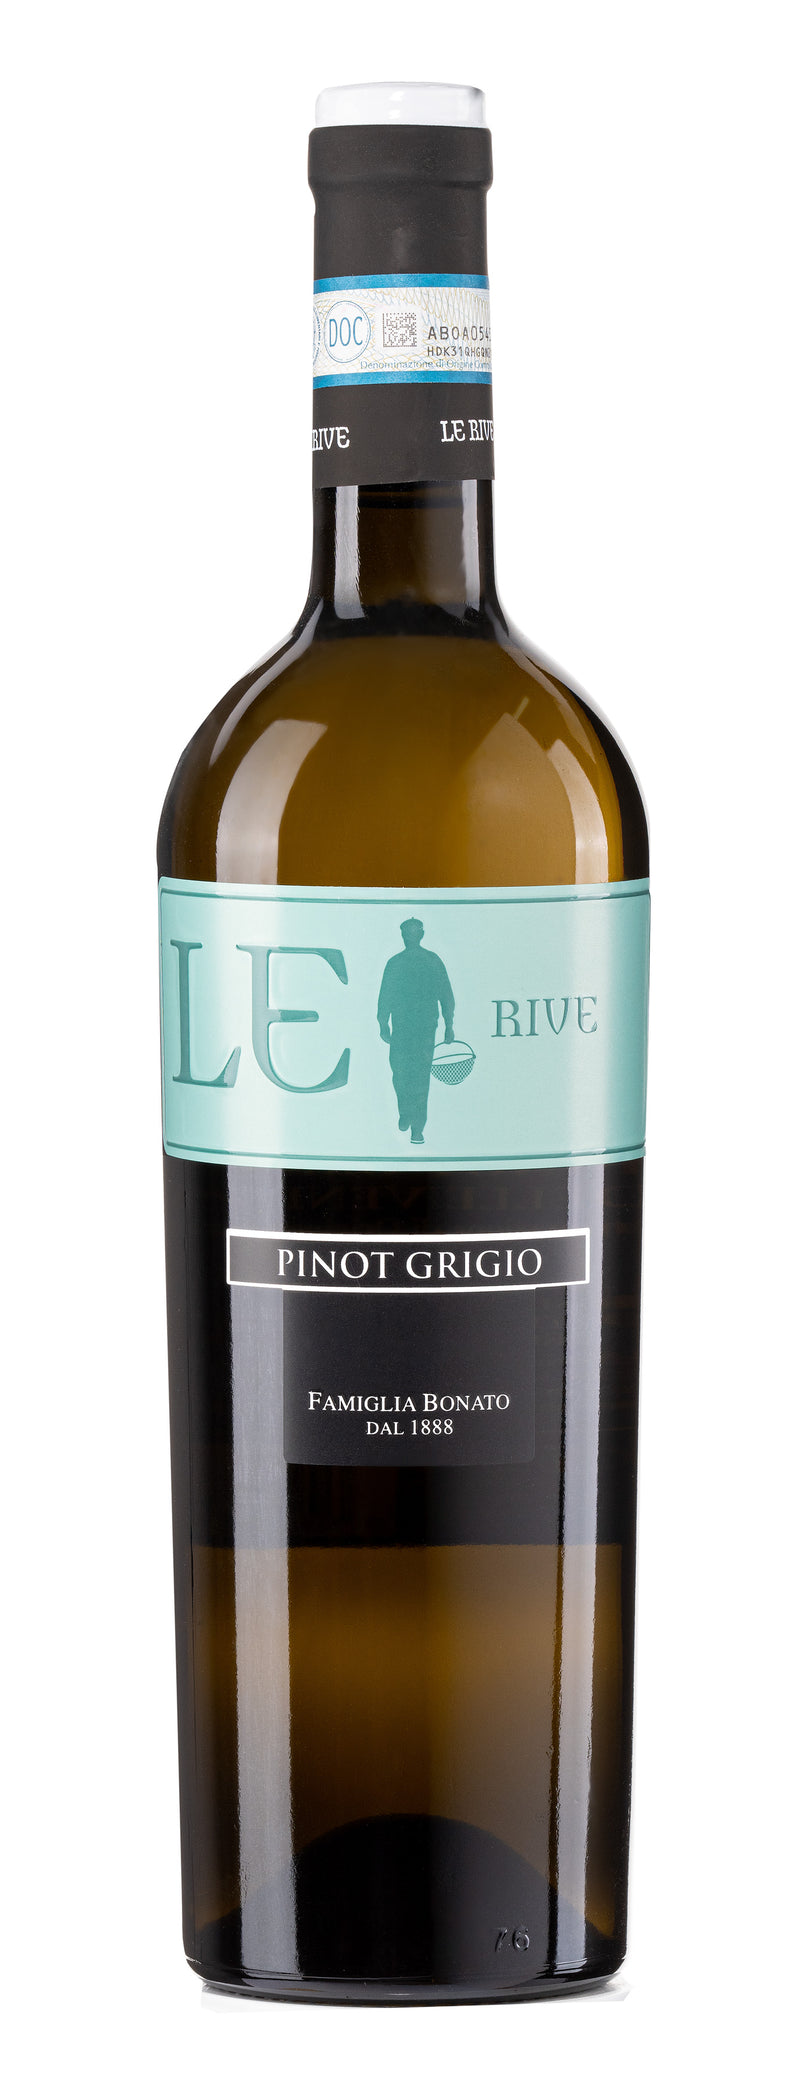 Le Rive - Pinot Grigio 2016